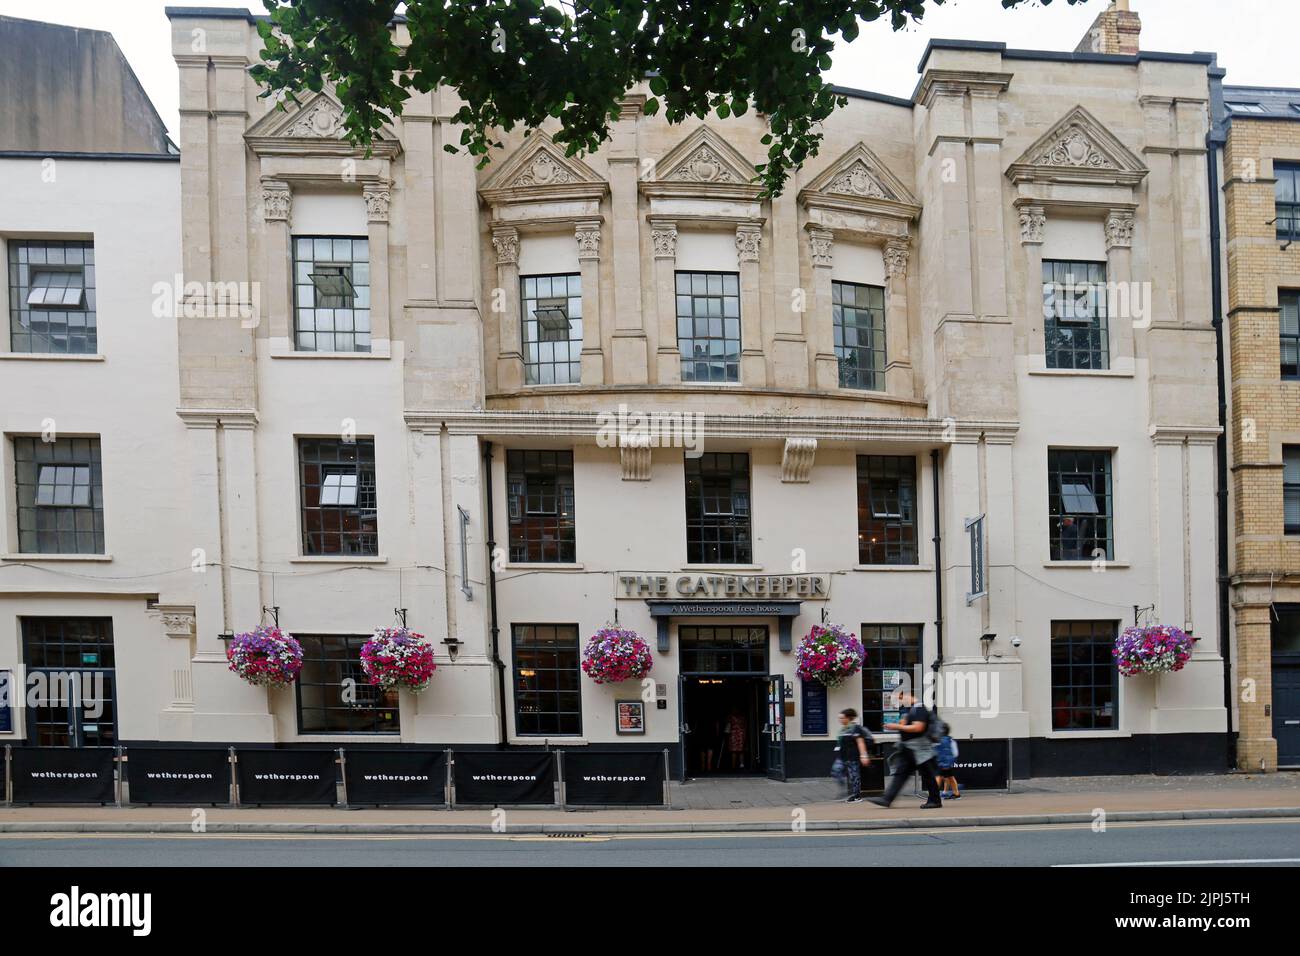 Das Gatekeeper-Haus, Westgate Street, Cardiff. Wetherspoon. Aufgenommen Am 2022. August. Sommer. Stockfoto